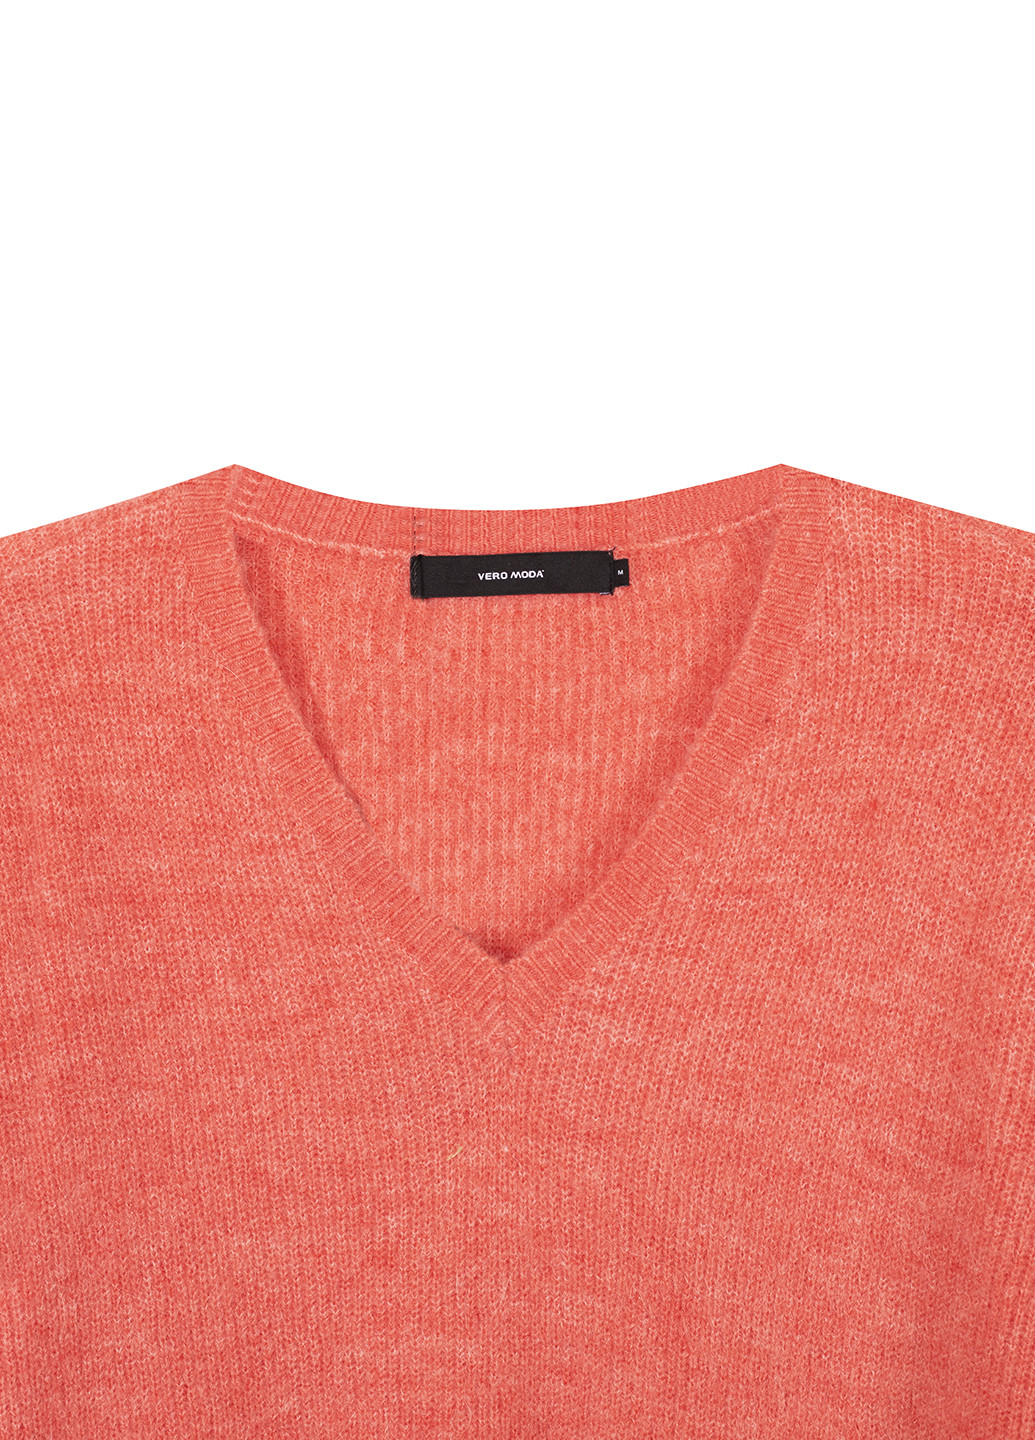 Розовый демисезонный пуловер пуловер Vero Moda